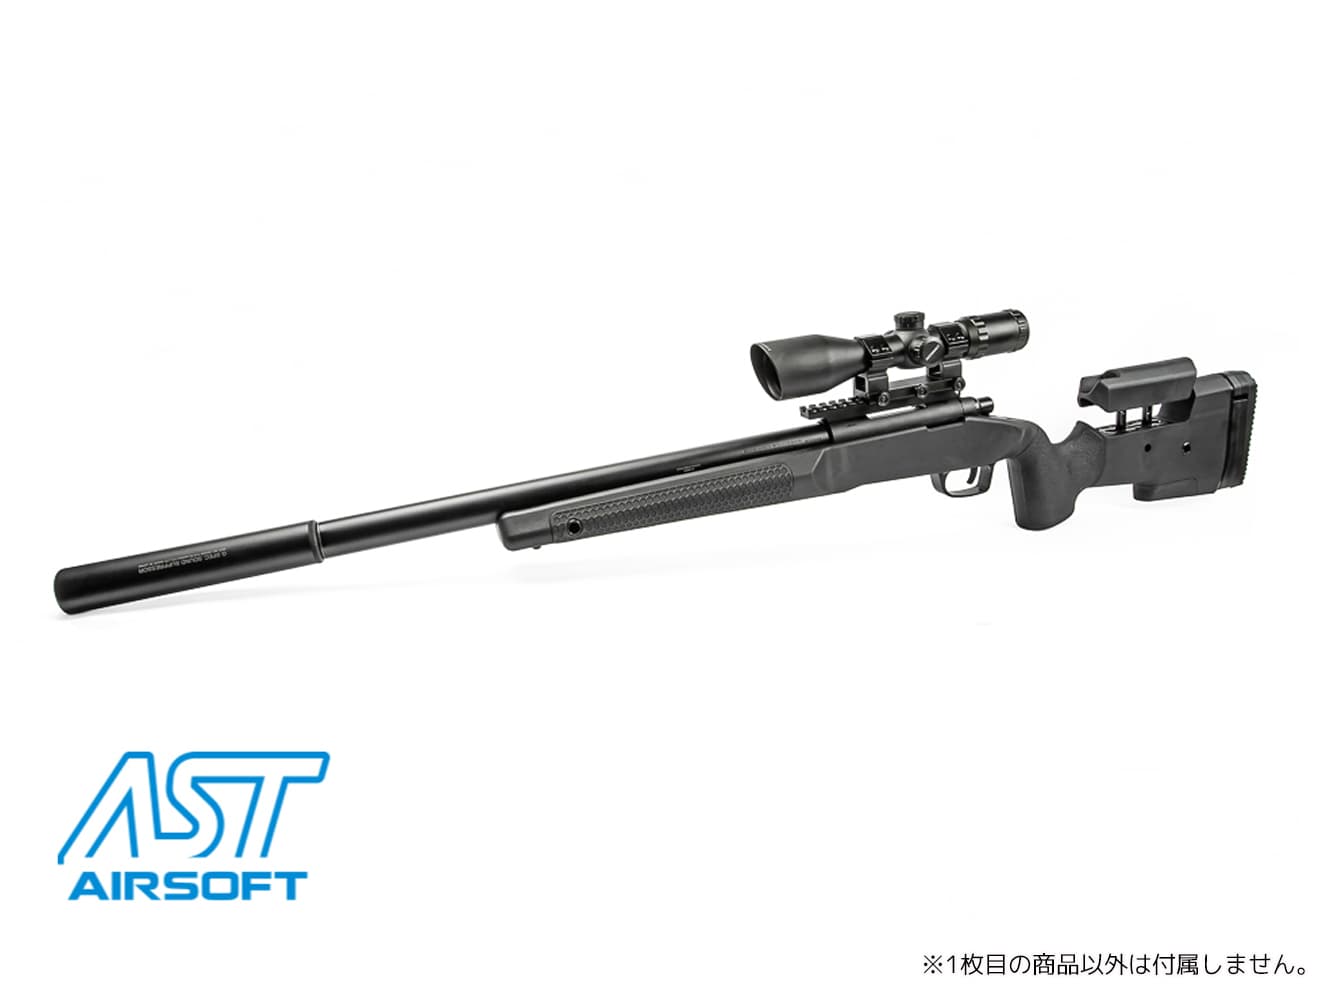 【新品】東京マルイボルトアクションエアーライフル VSR‐10シリーズ用Maple Leaf MLC-S1 ライフルストックキット(ブラック)